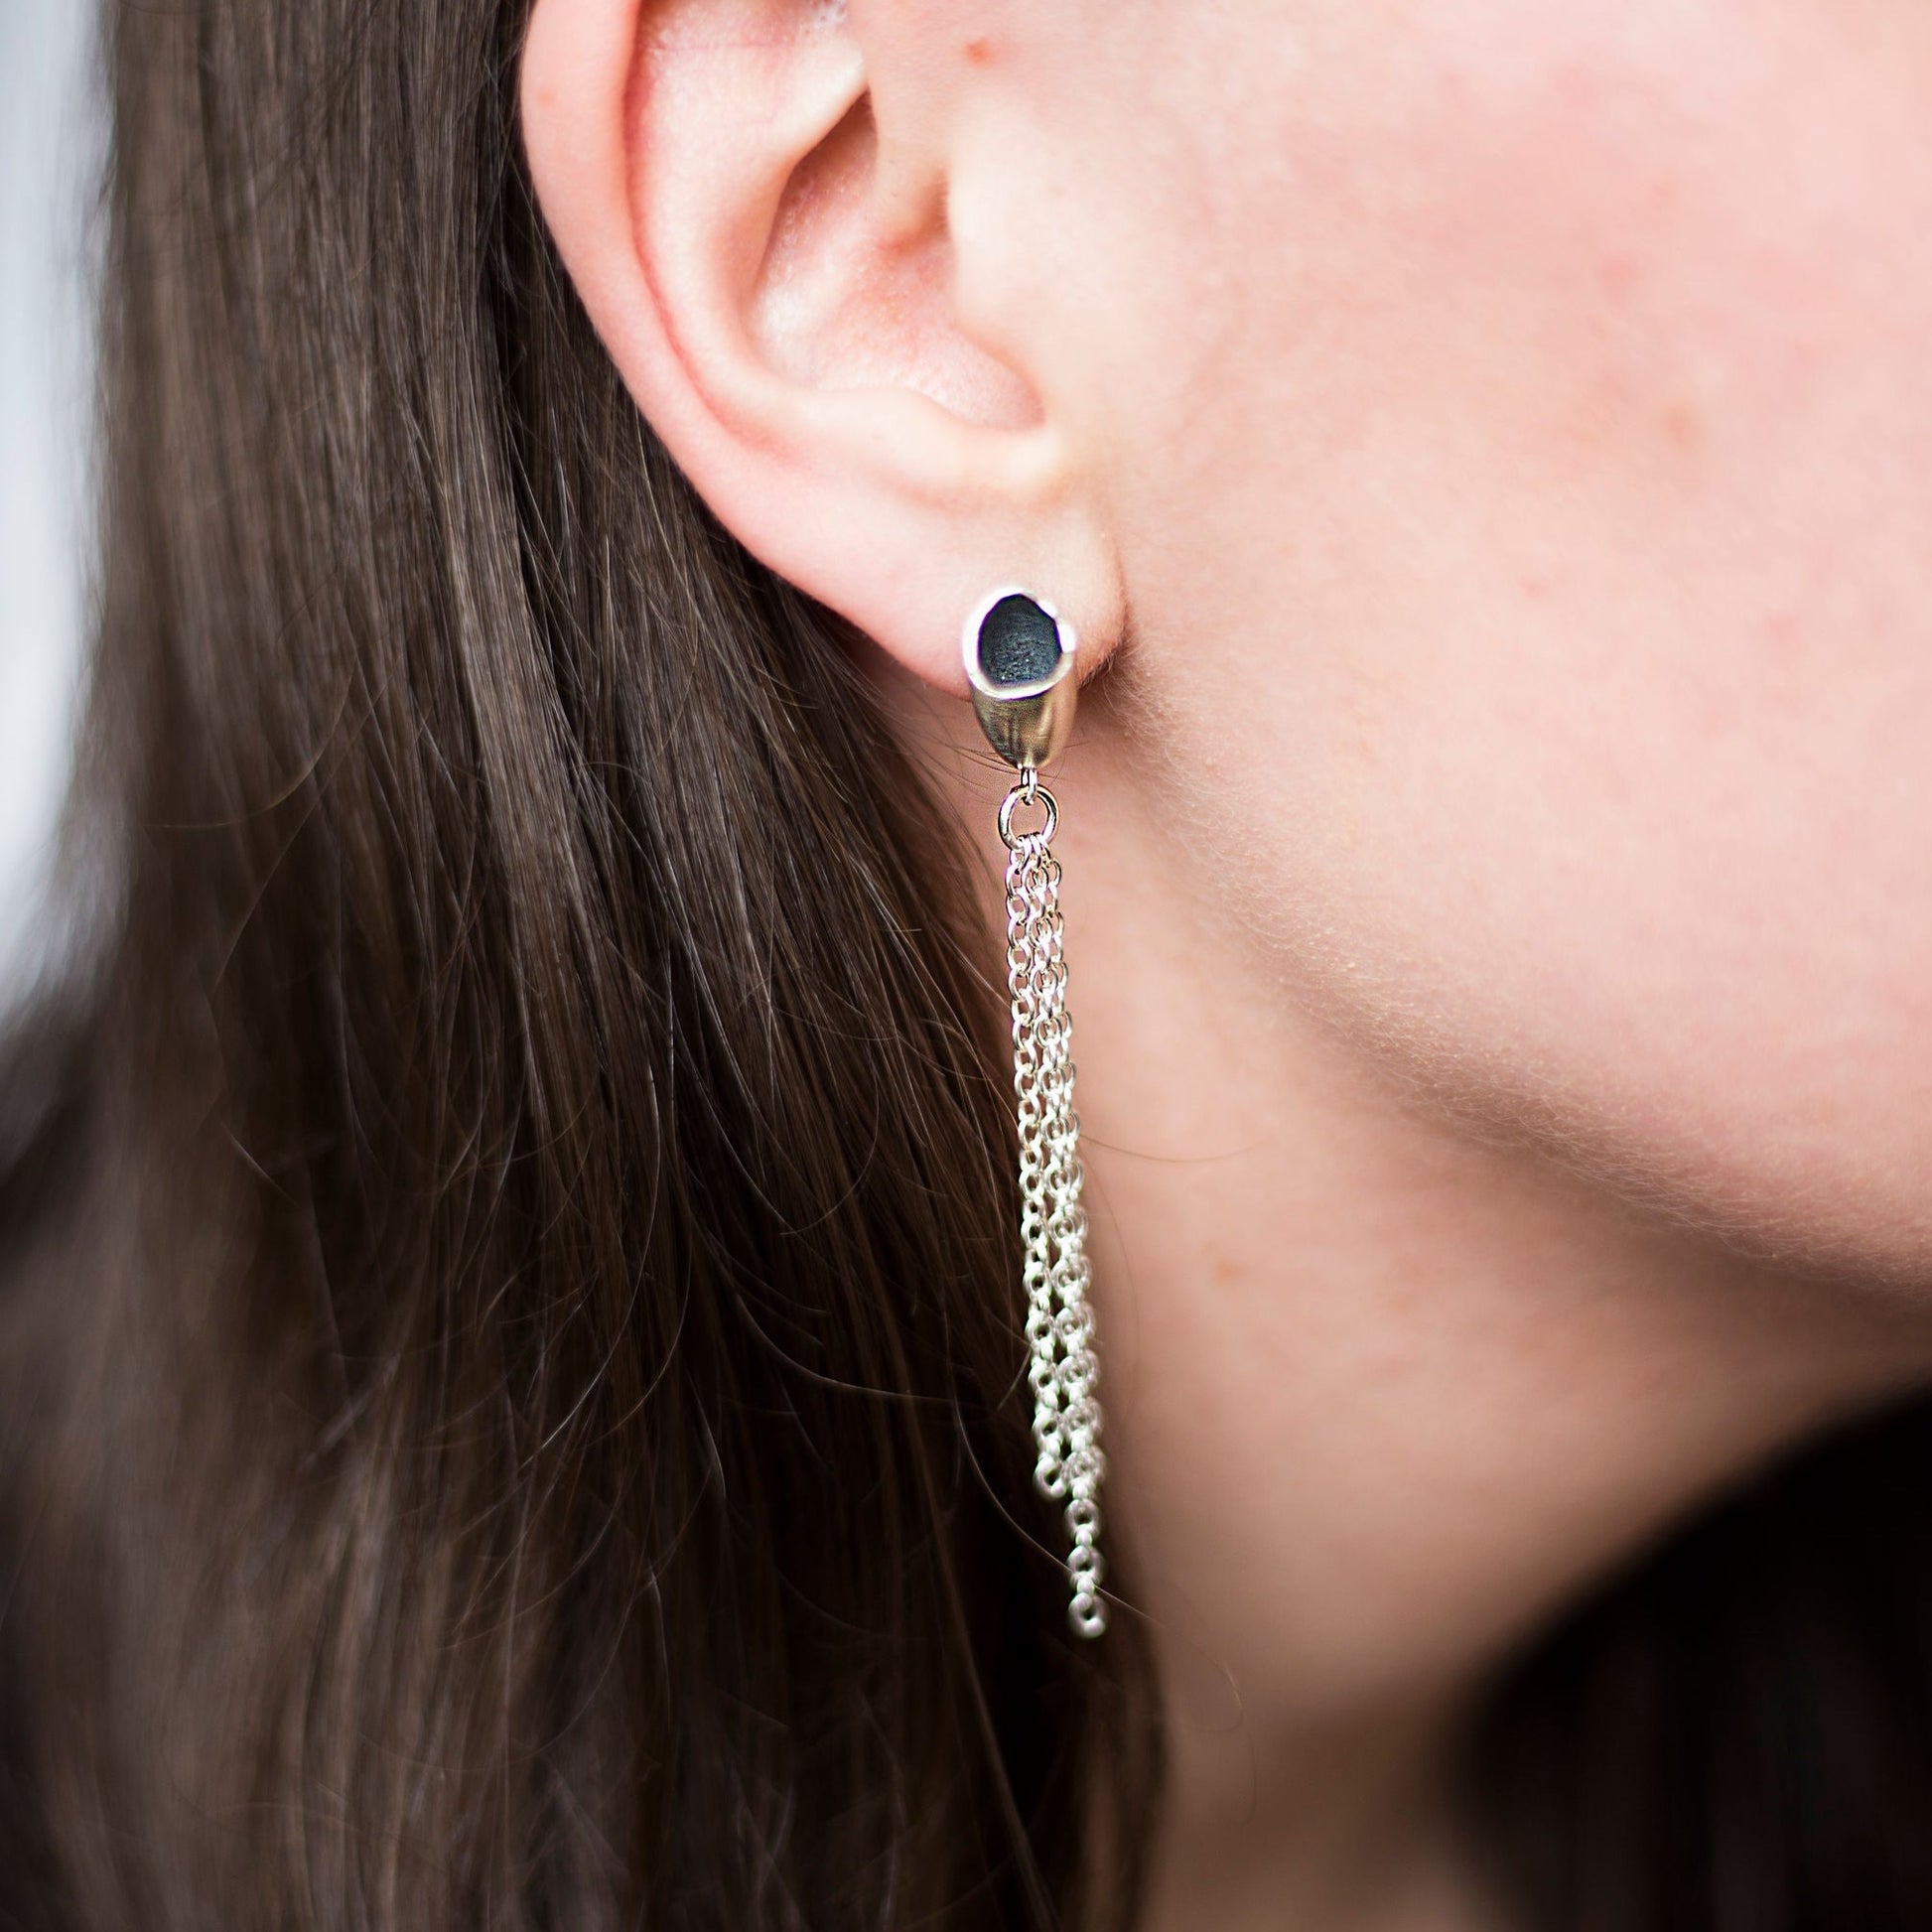 Silver Pod Chain Earrings Earrings handmade by Anna Calvert Jewellery in the UK